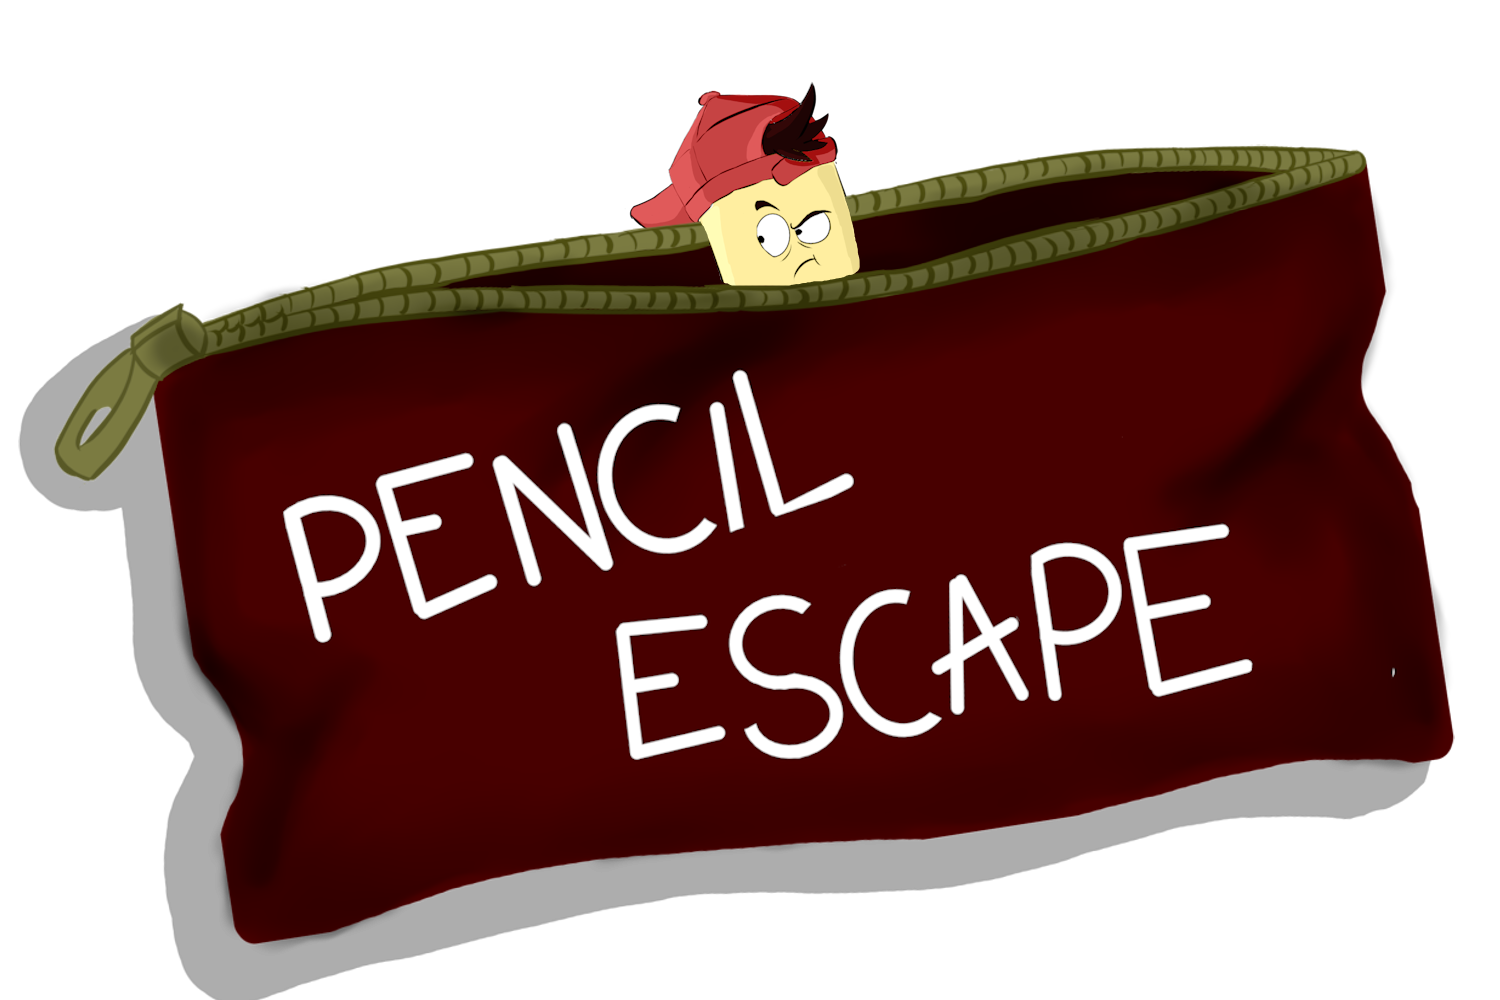 Pencil Escape